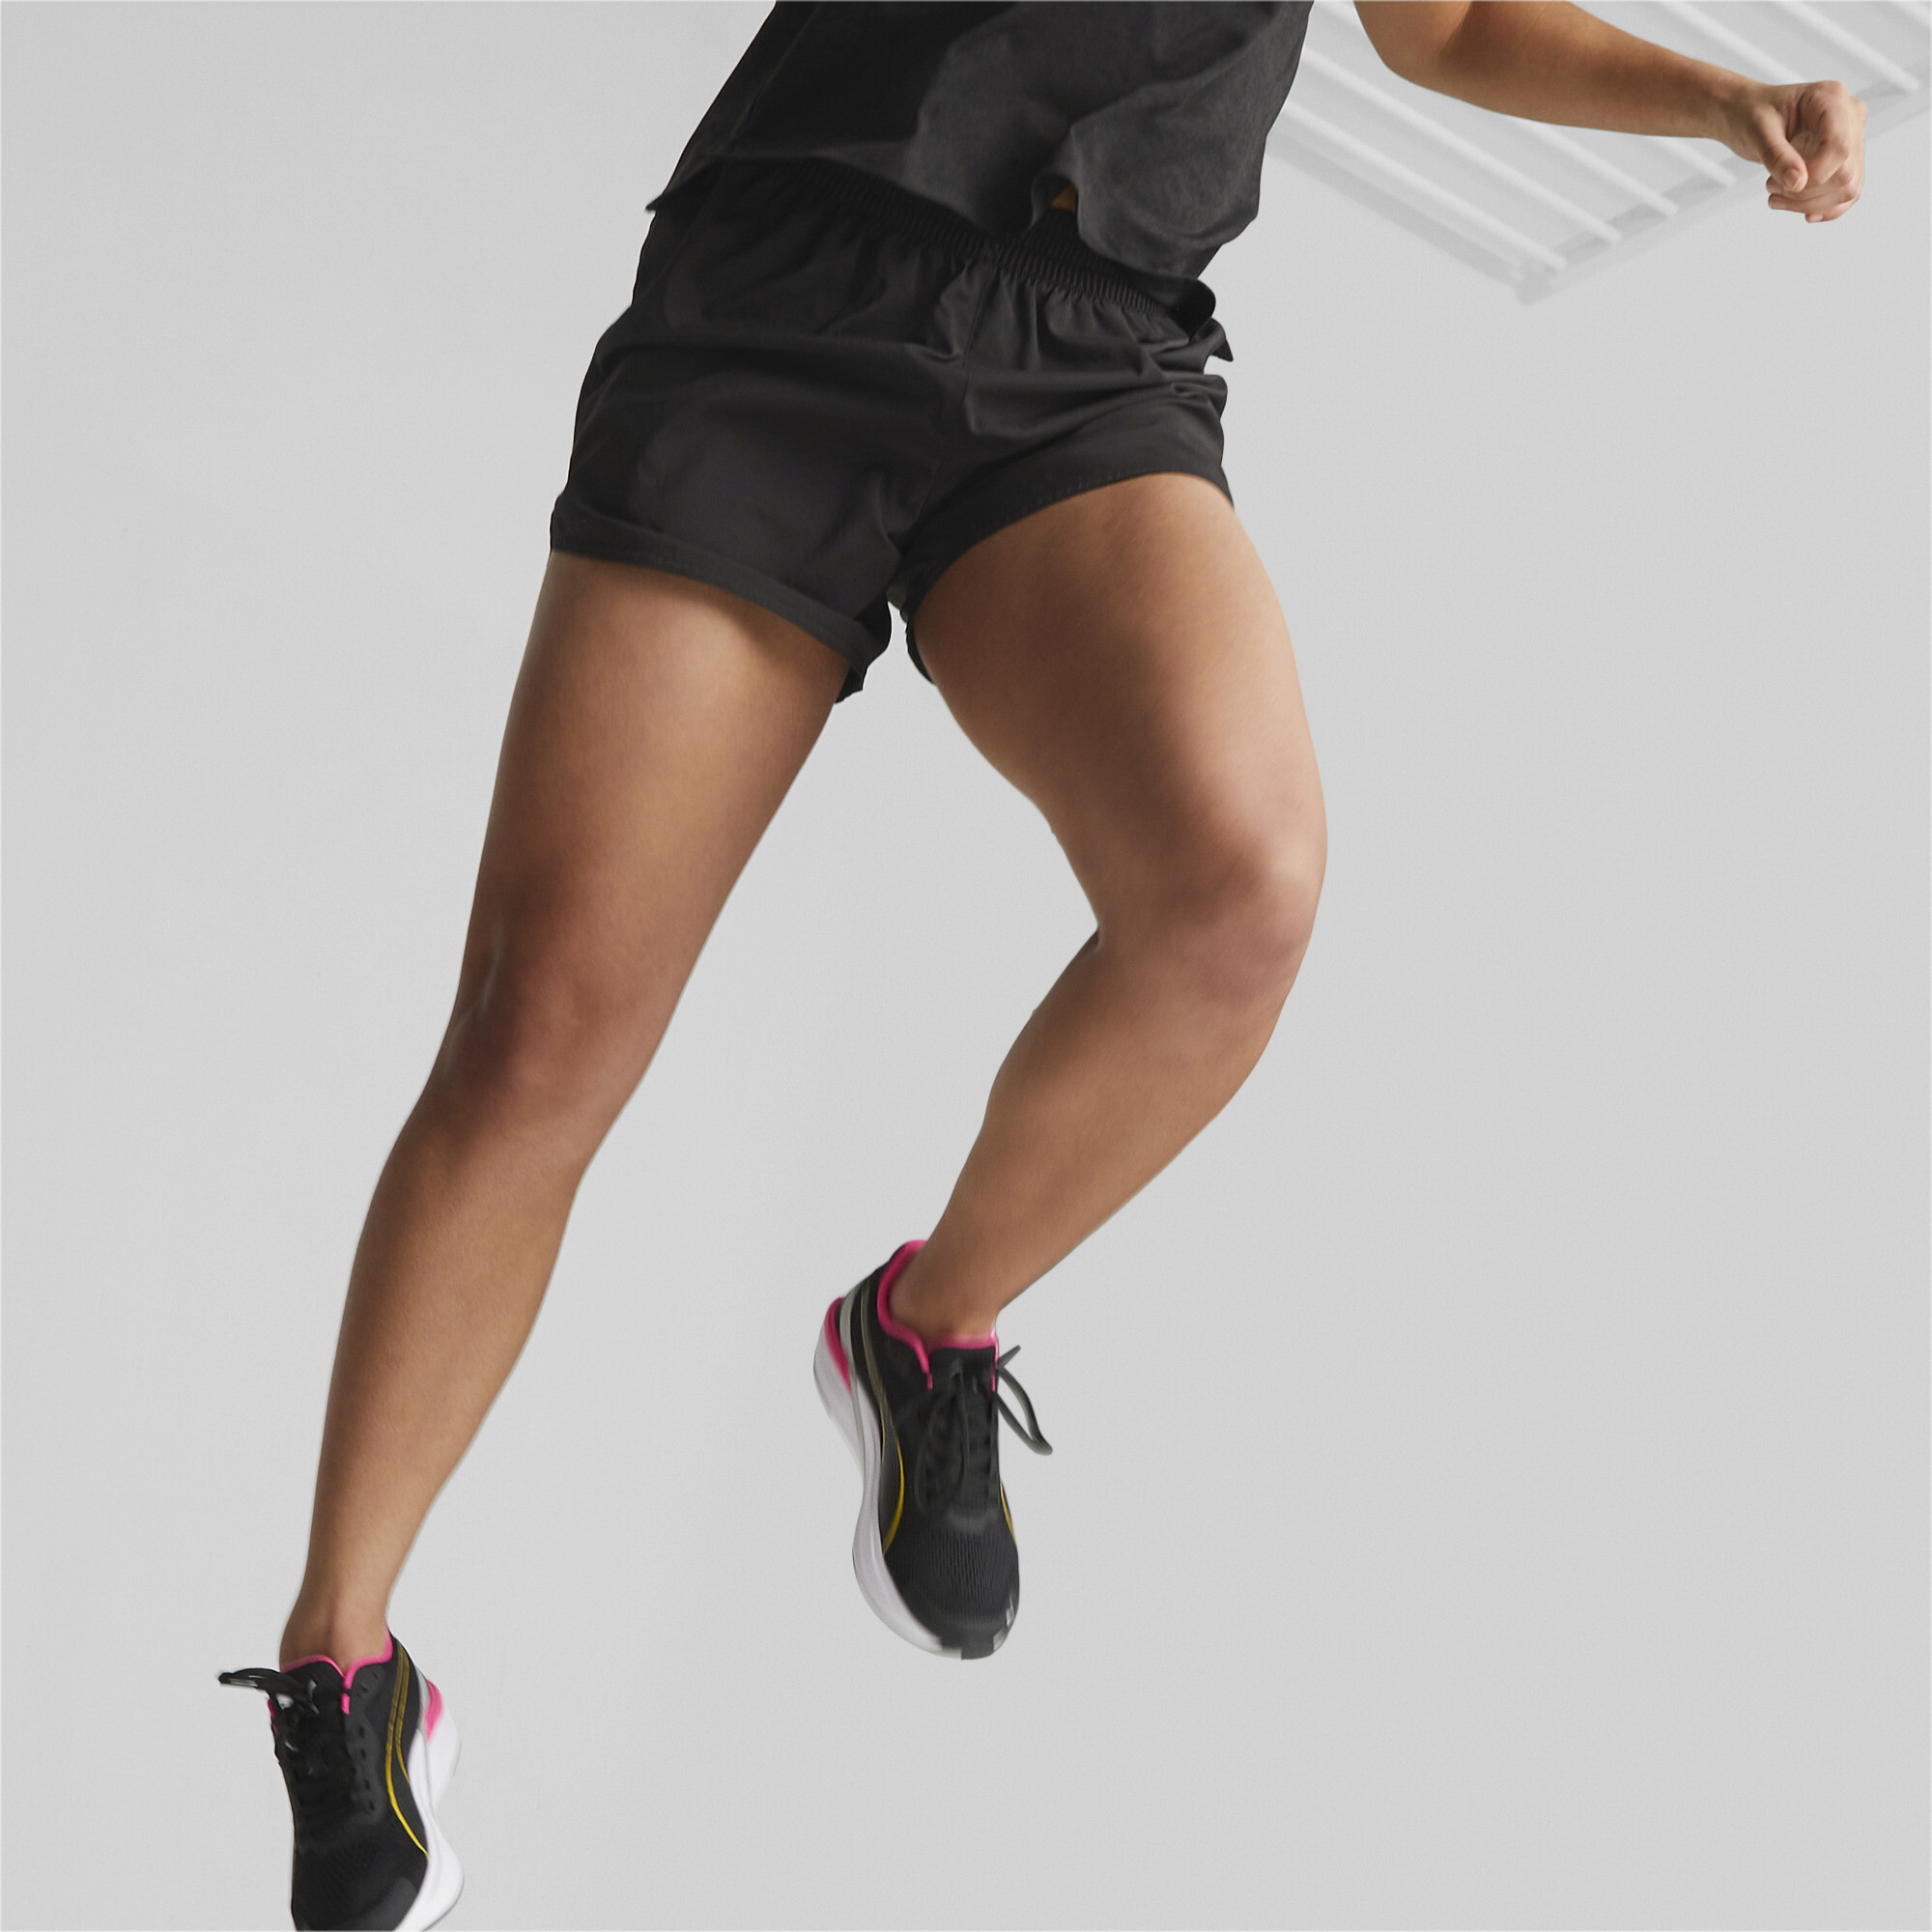 Women's Puma Run Favourite Woven 5 Running Shorts, Black, Size XL, Clothing